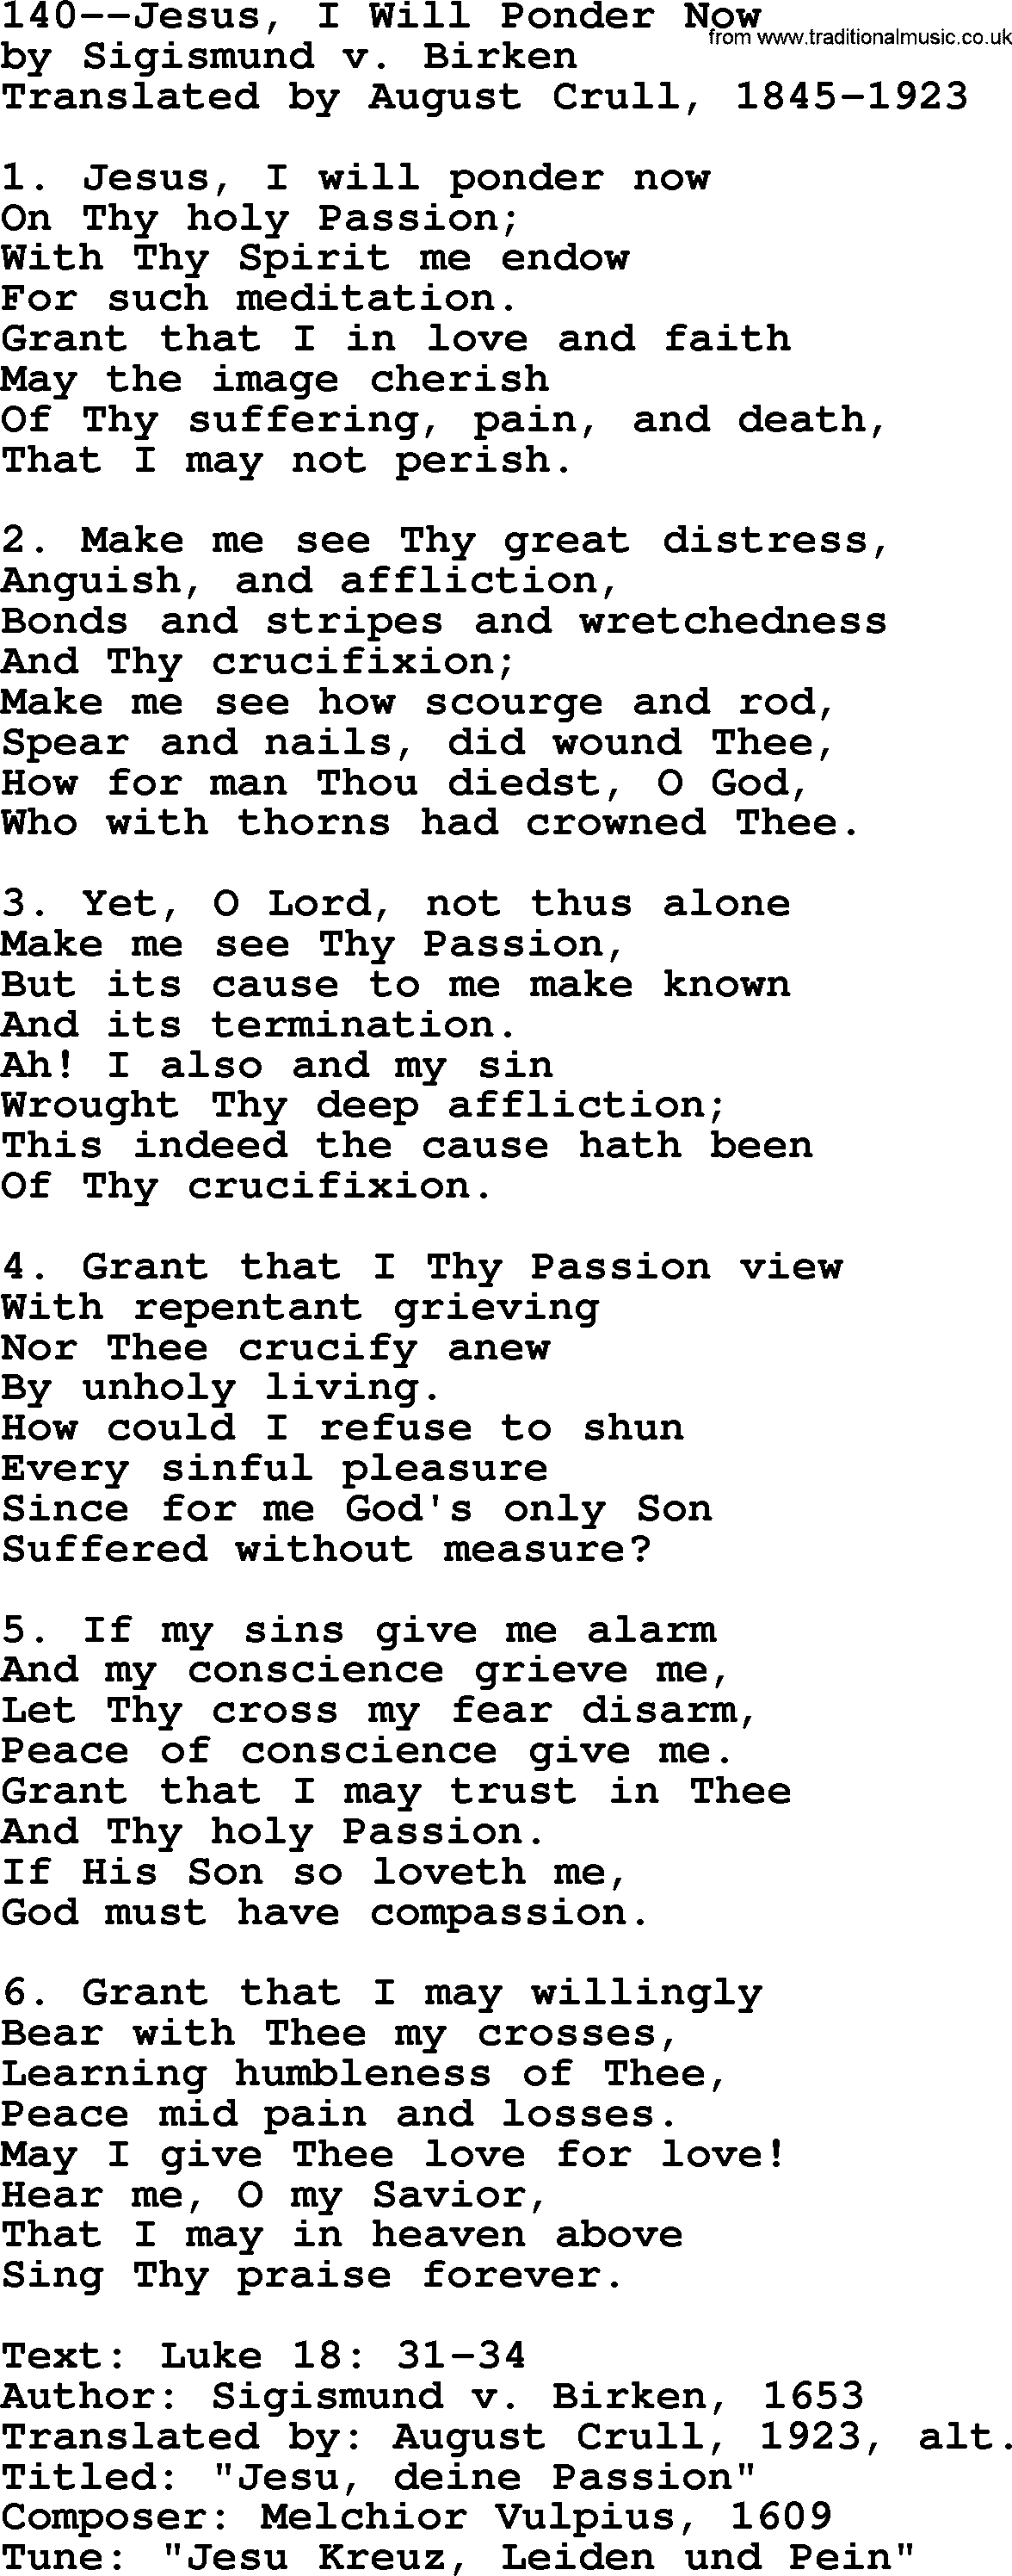 Lutheran Hymn: 140--Jesus, I Will Ponder Now.txt lyrics with PDF